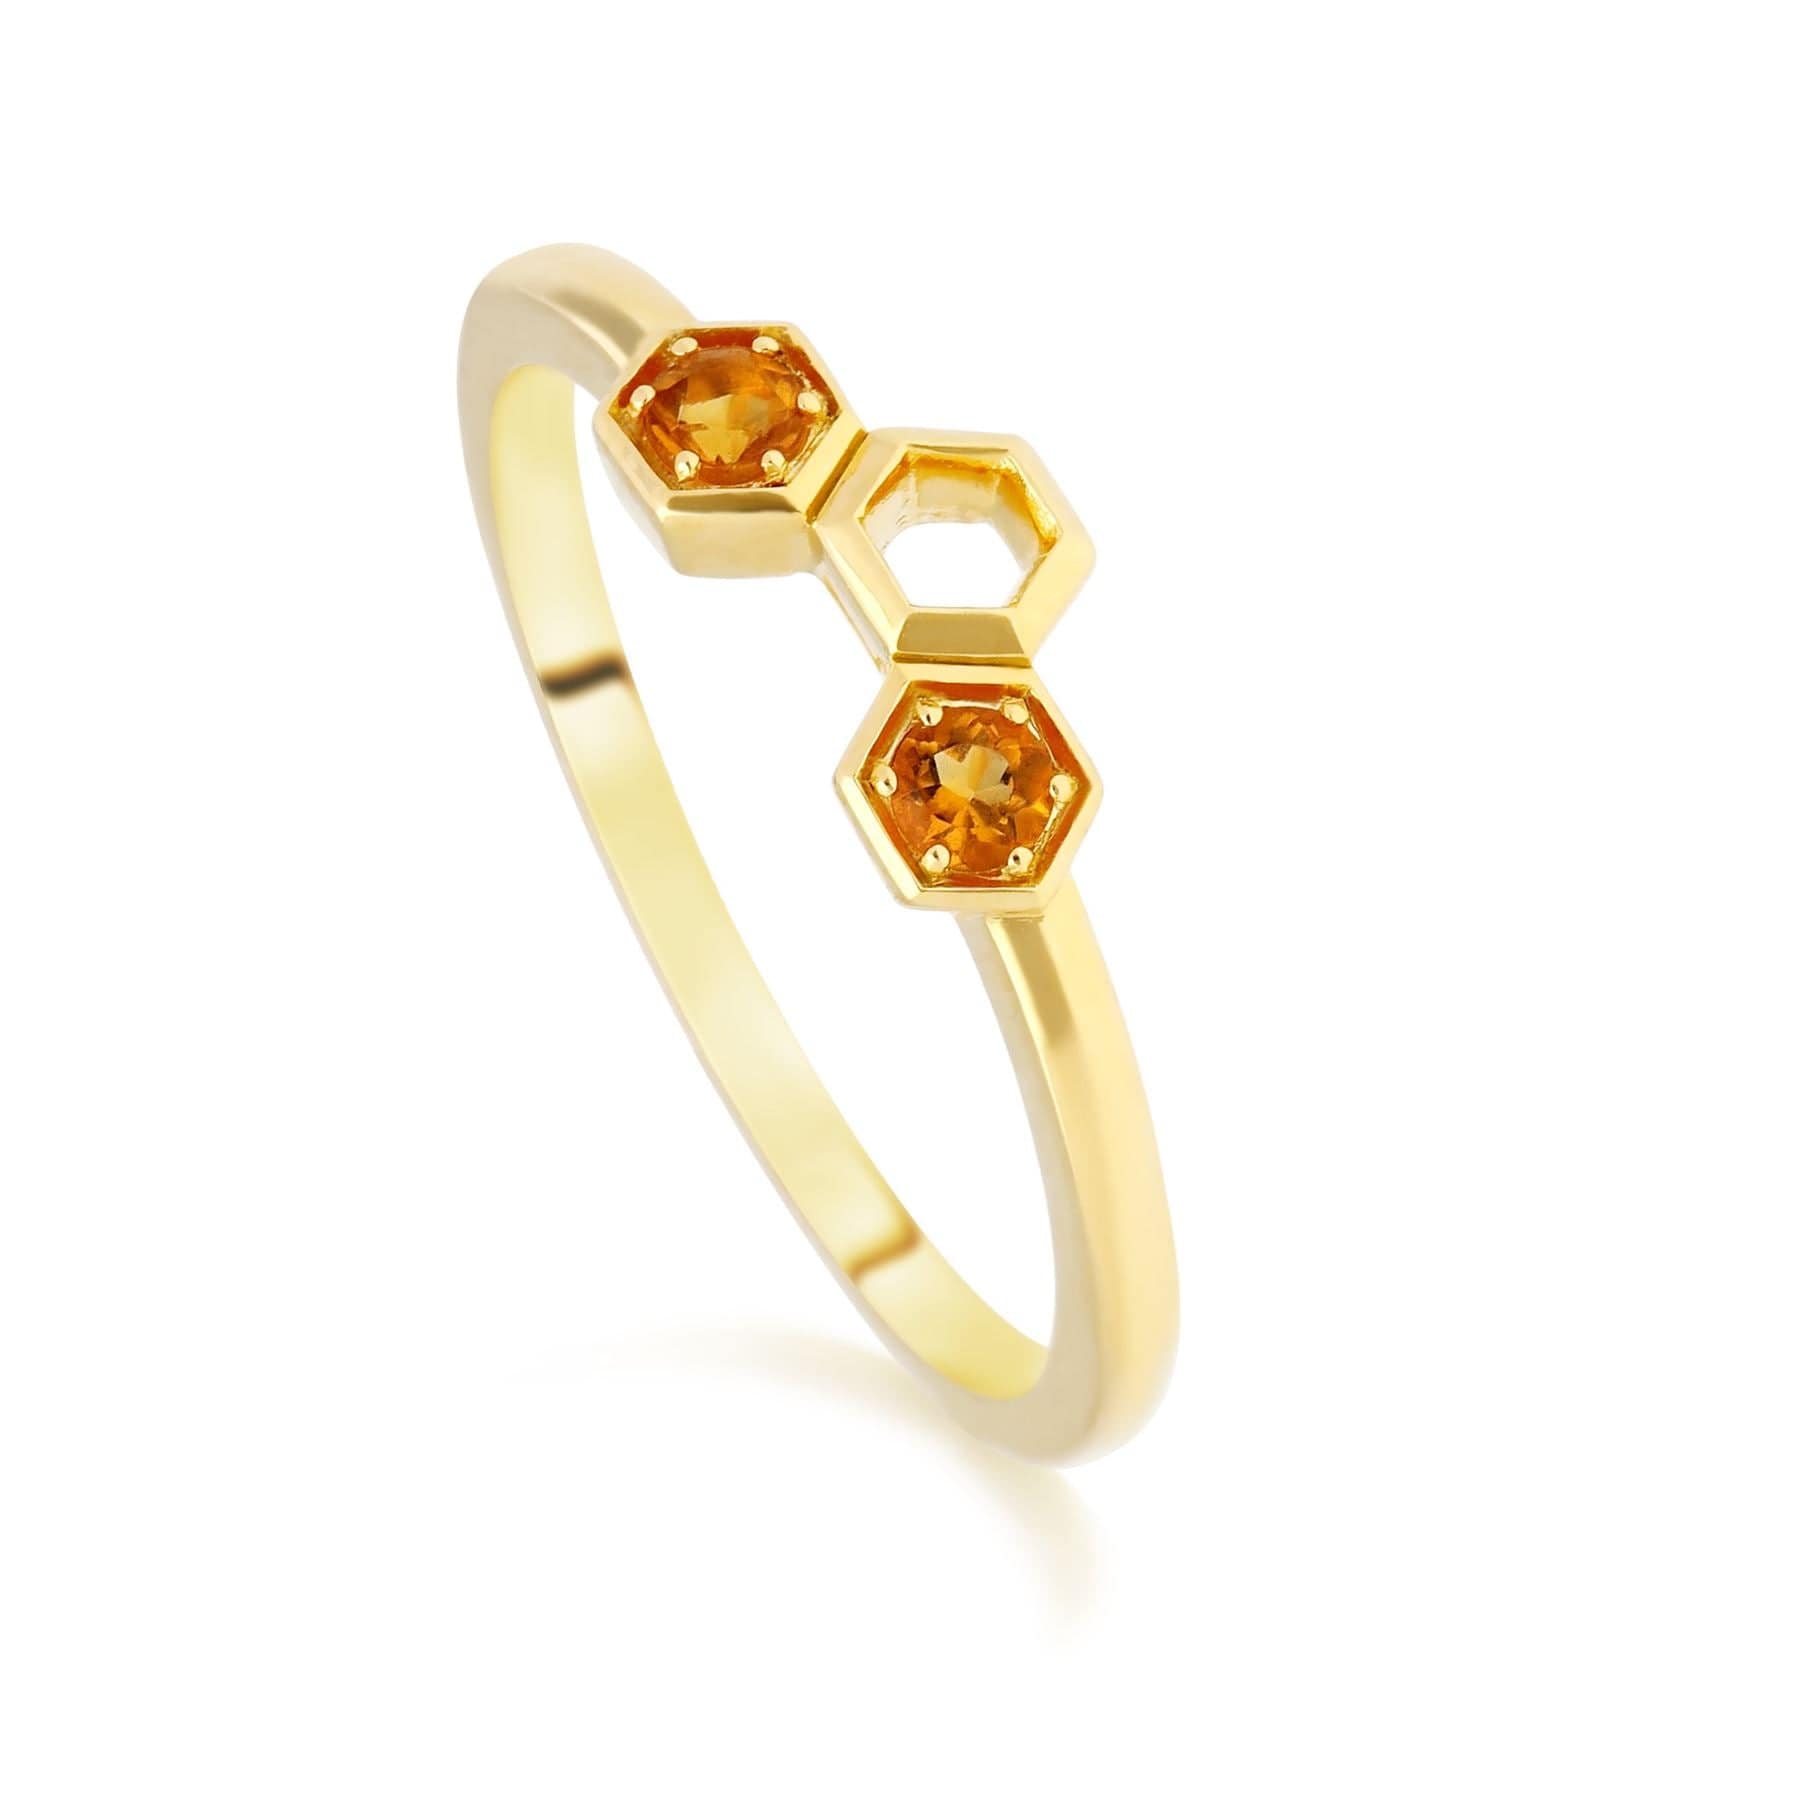 Honeycomb Inspired Citrine Stack Ring in 9ct Yellow Gold - Gemondo